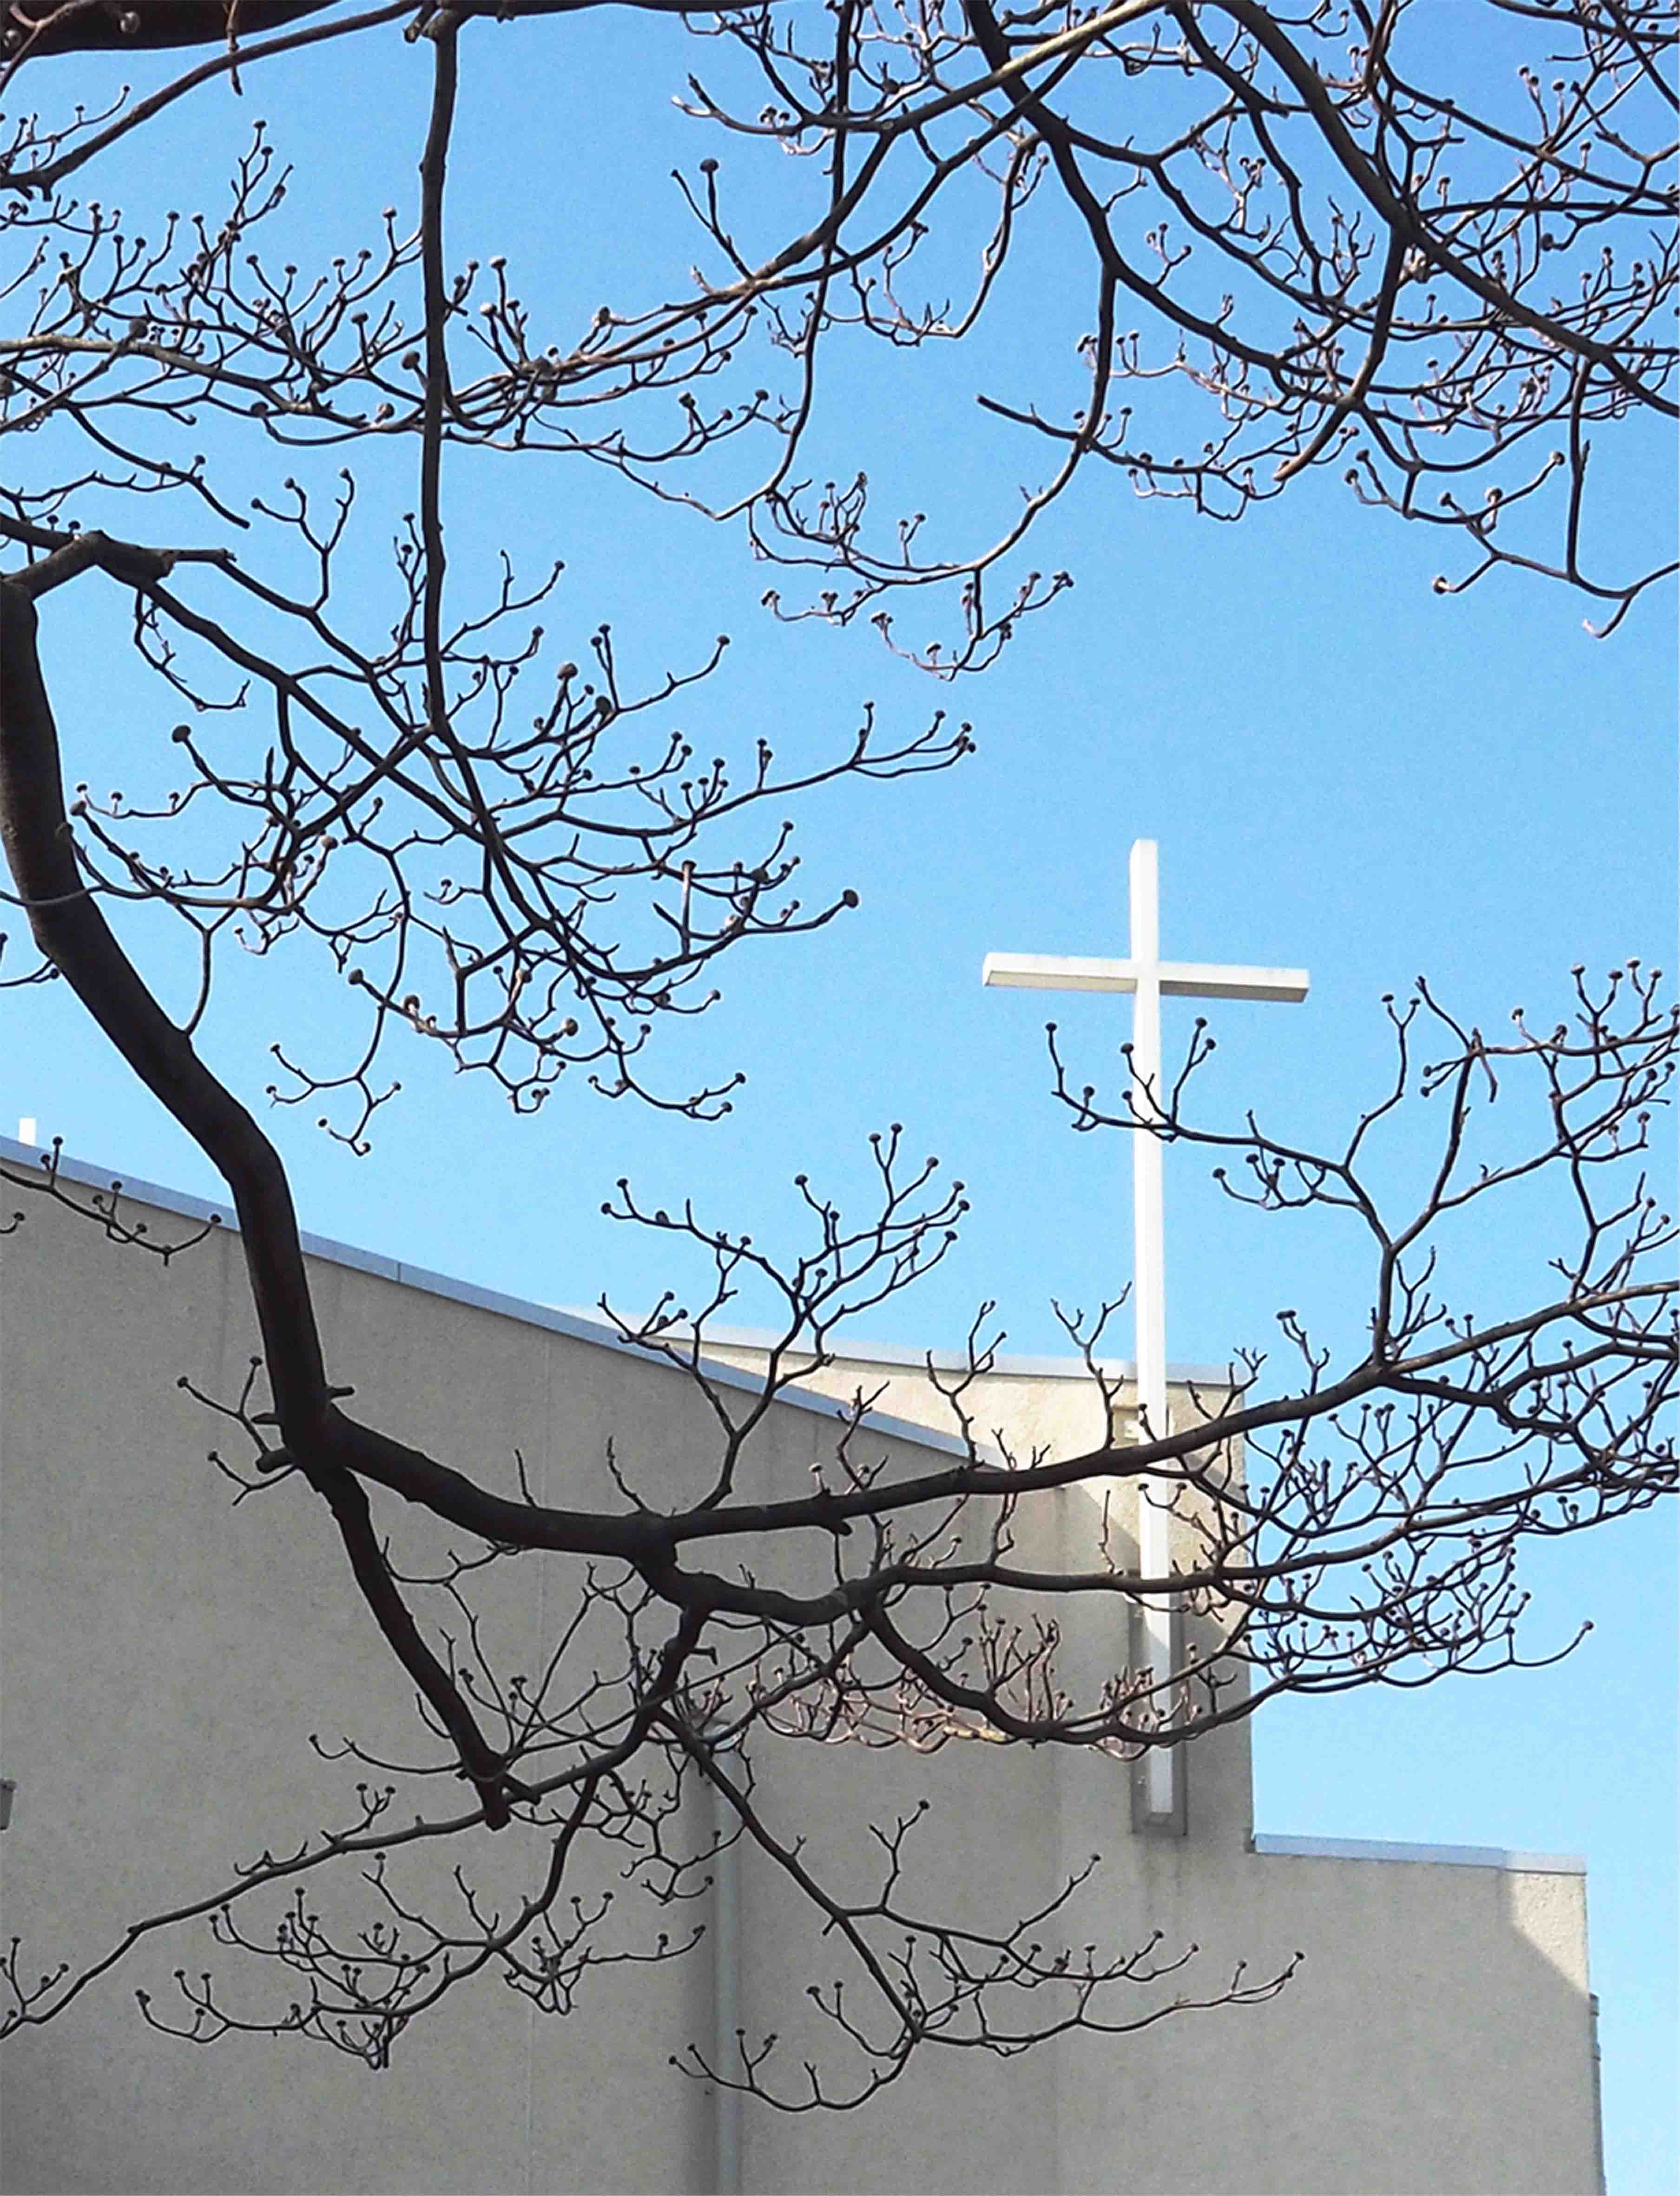 教会前のハナミズキの枯れ枝越しに見る白い教会聖堂と十字架の写真